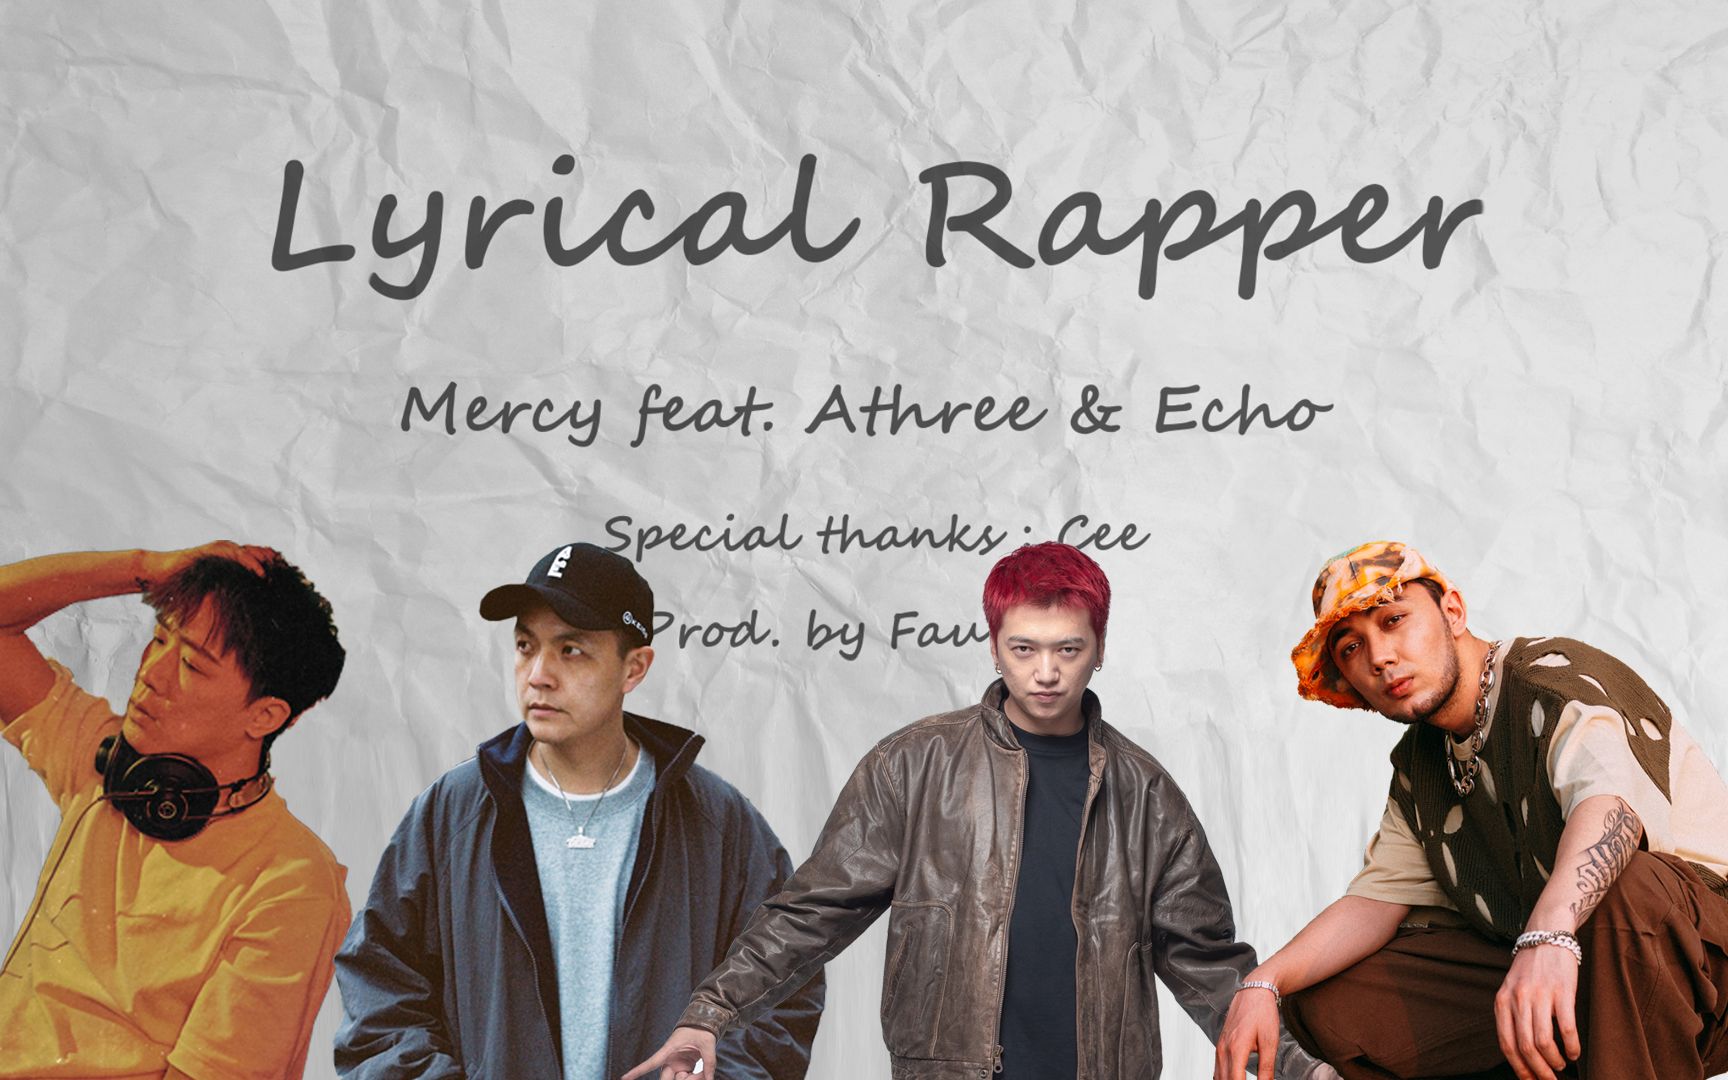 Mercy合作Athree & Echo《Lyrical Rapper》